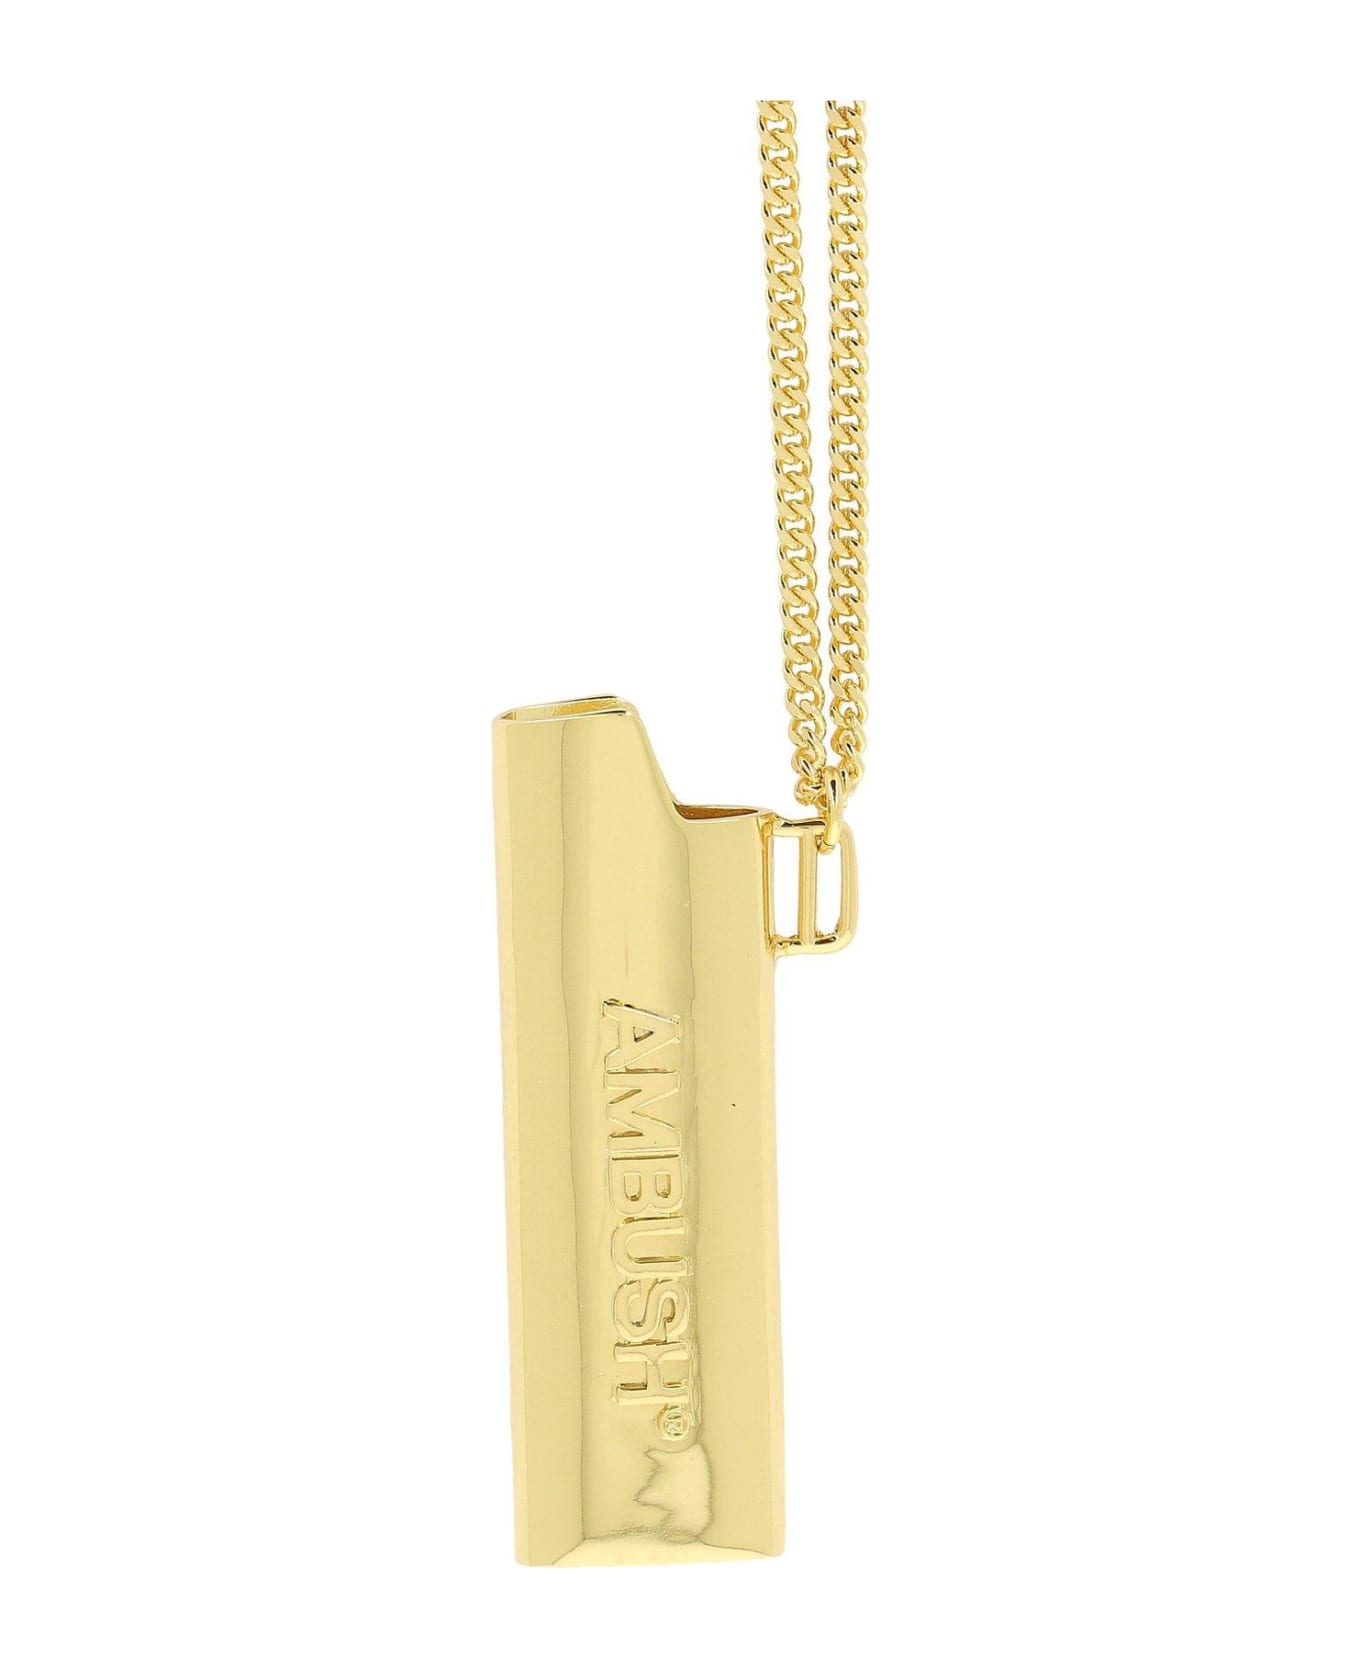 AMBUSH Lighter Case Charm Necklace - Golden